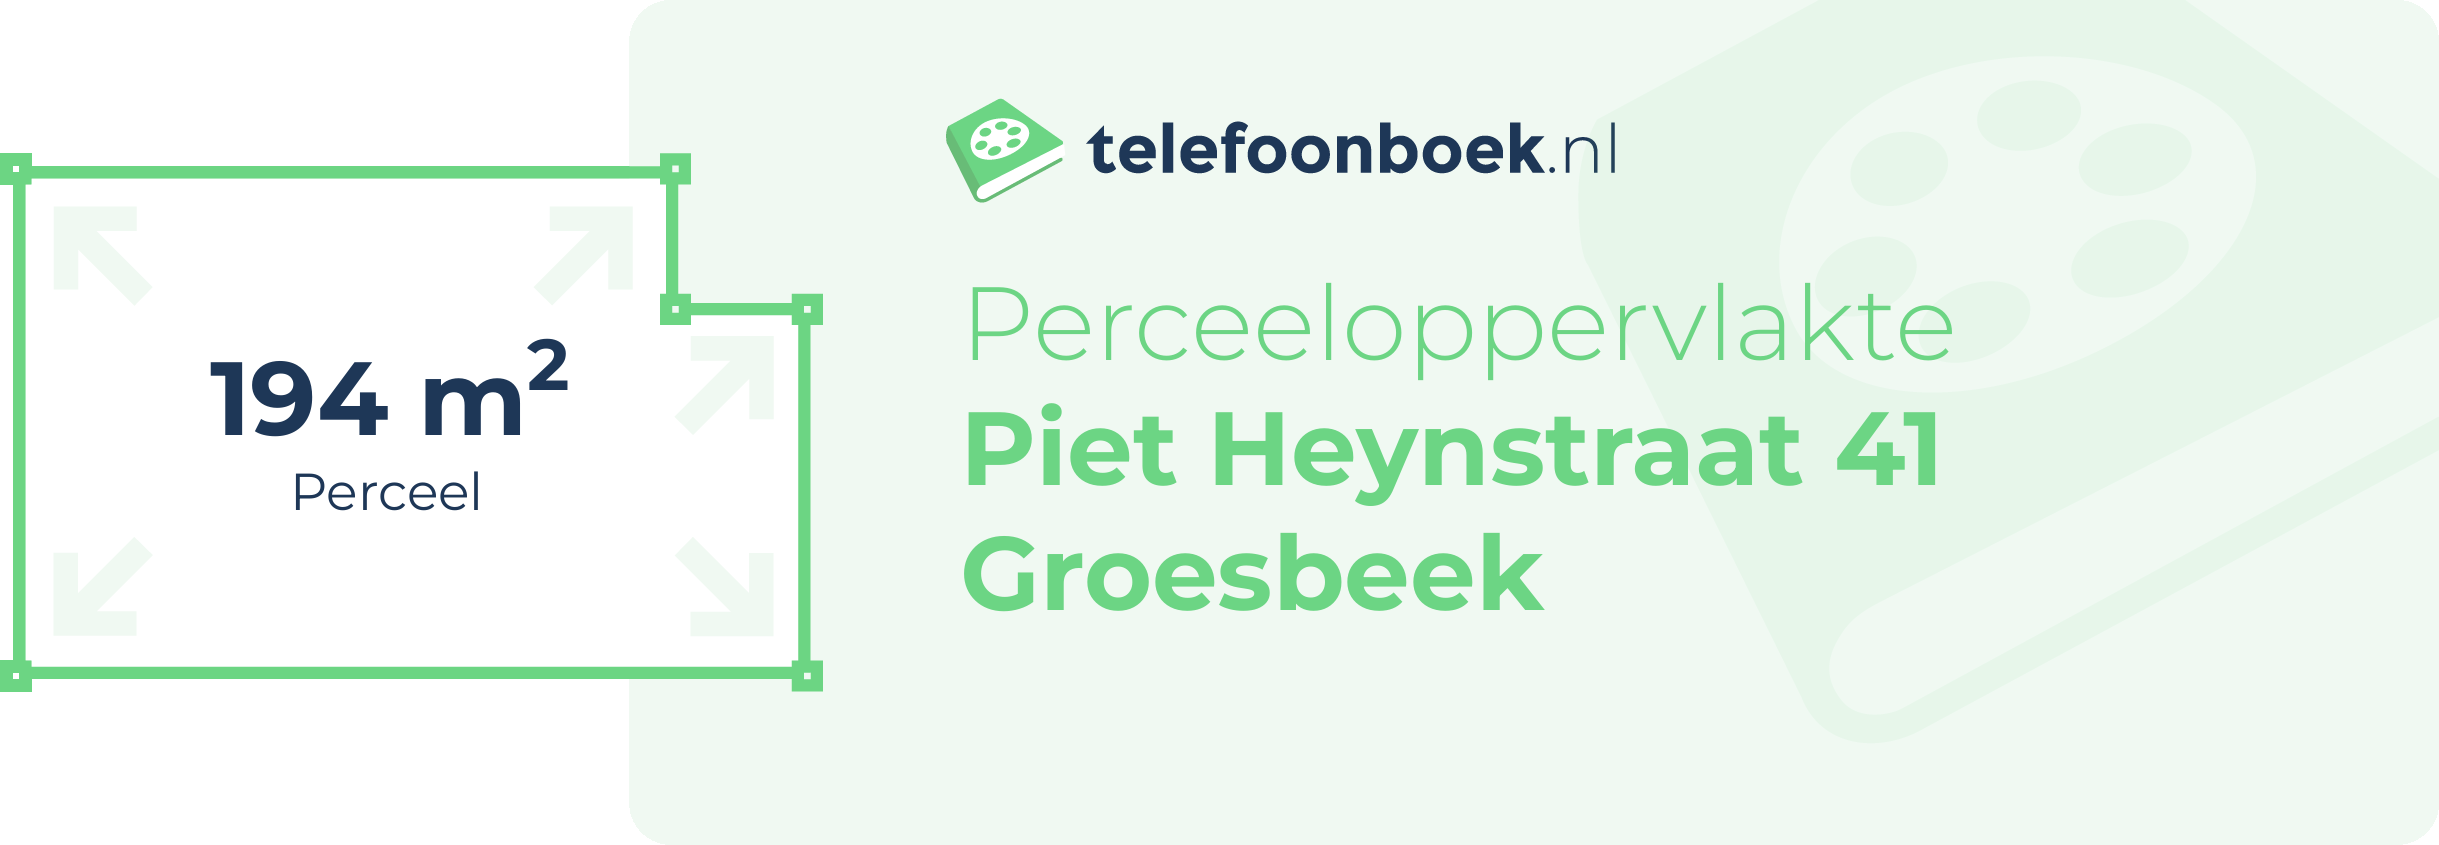 Perceeloppervlakte Piet Heynstraat 41 Groesbeek